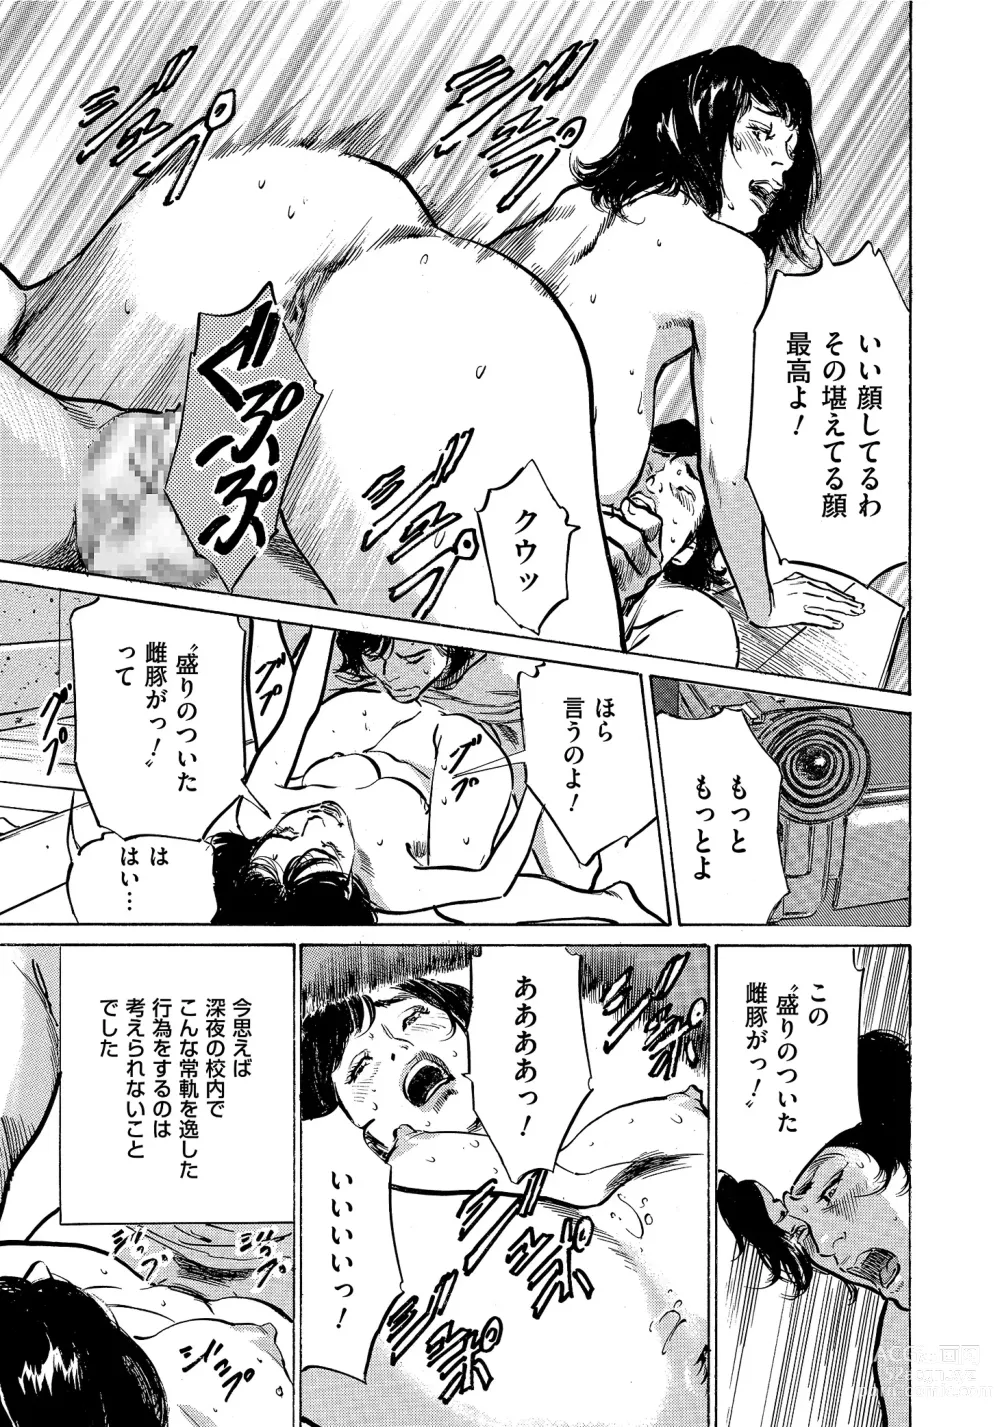 Page 256 of manga Saikou ni Toroketa Honki de Honto no Hanashi 16 episodes